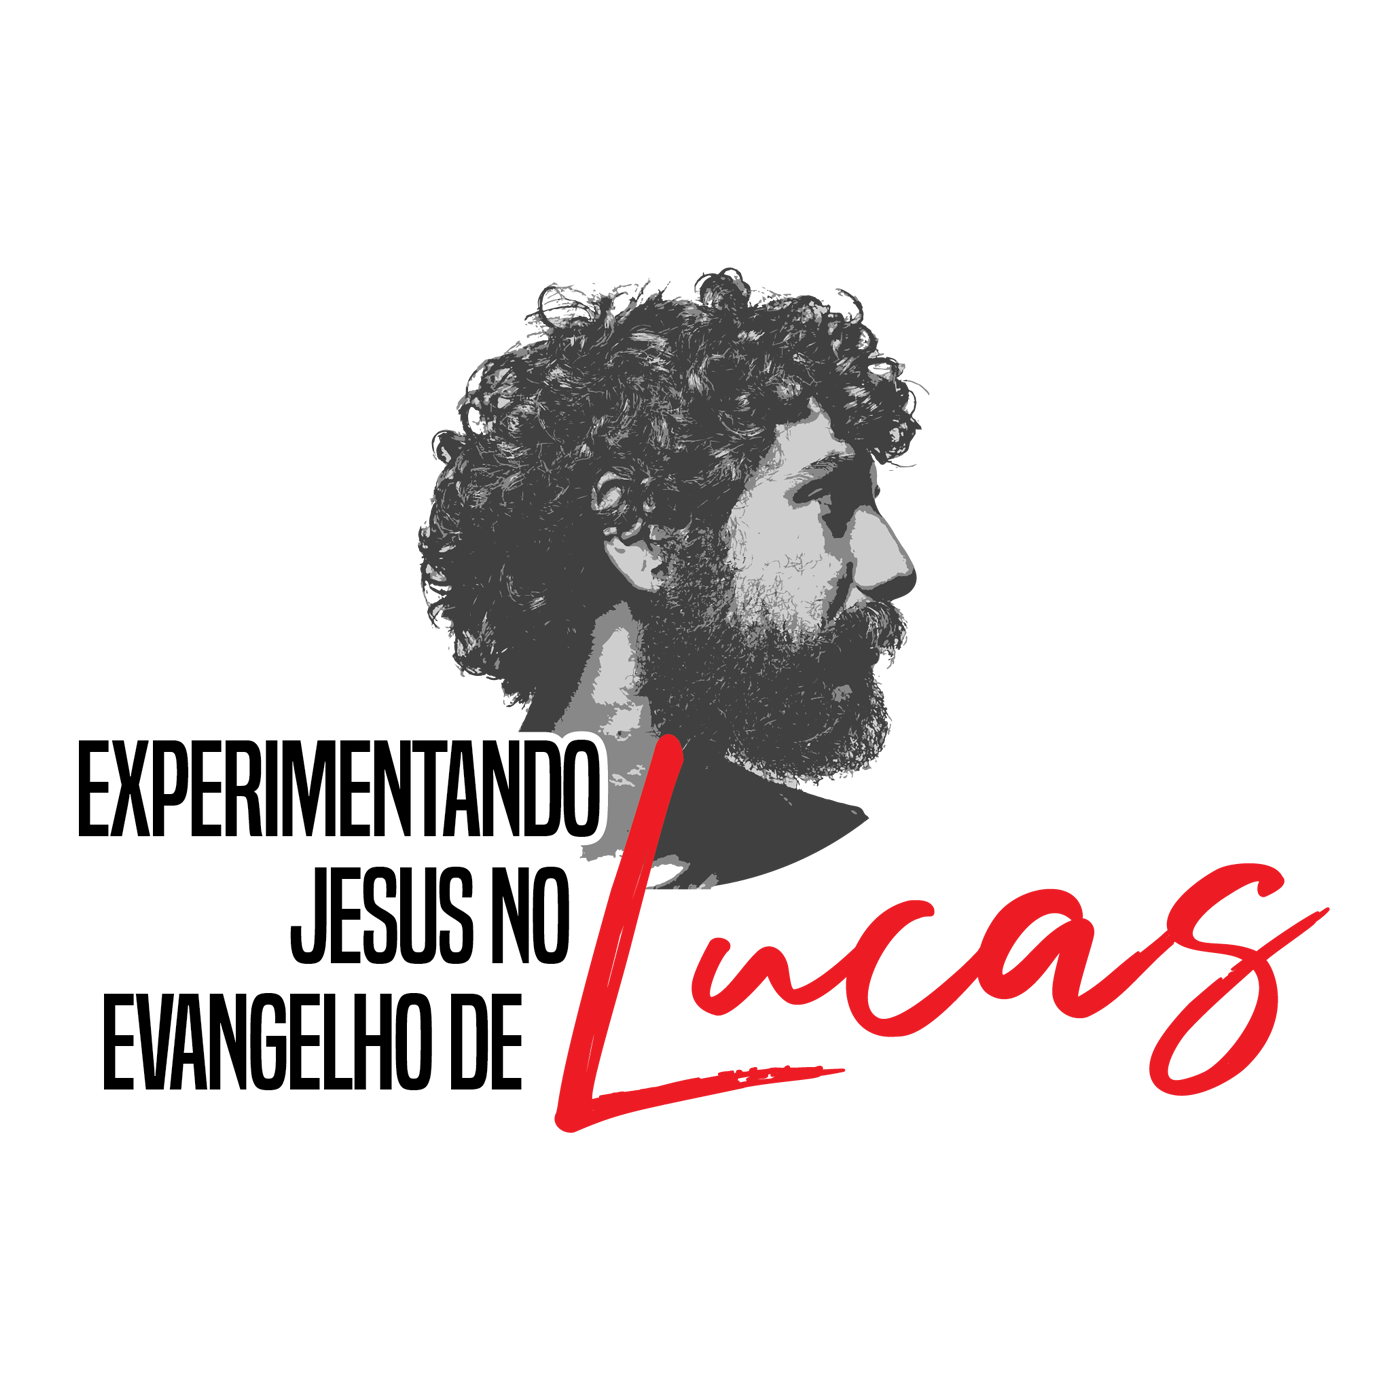 Lucas 2:36-38